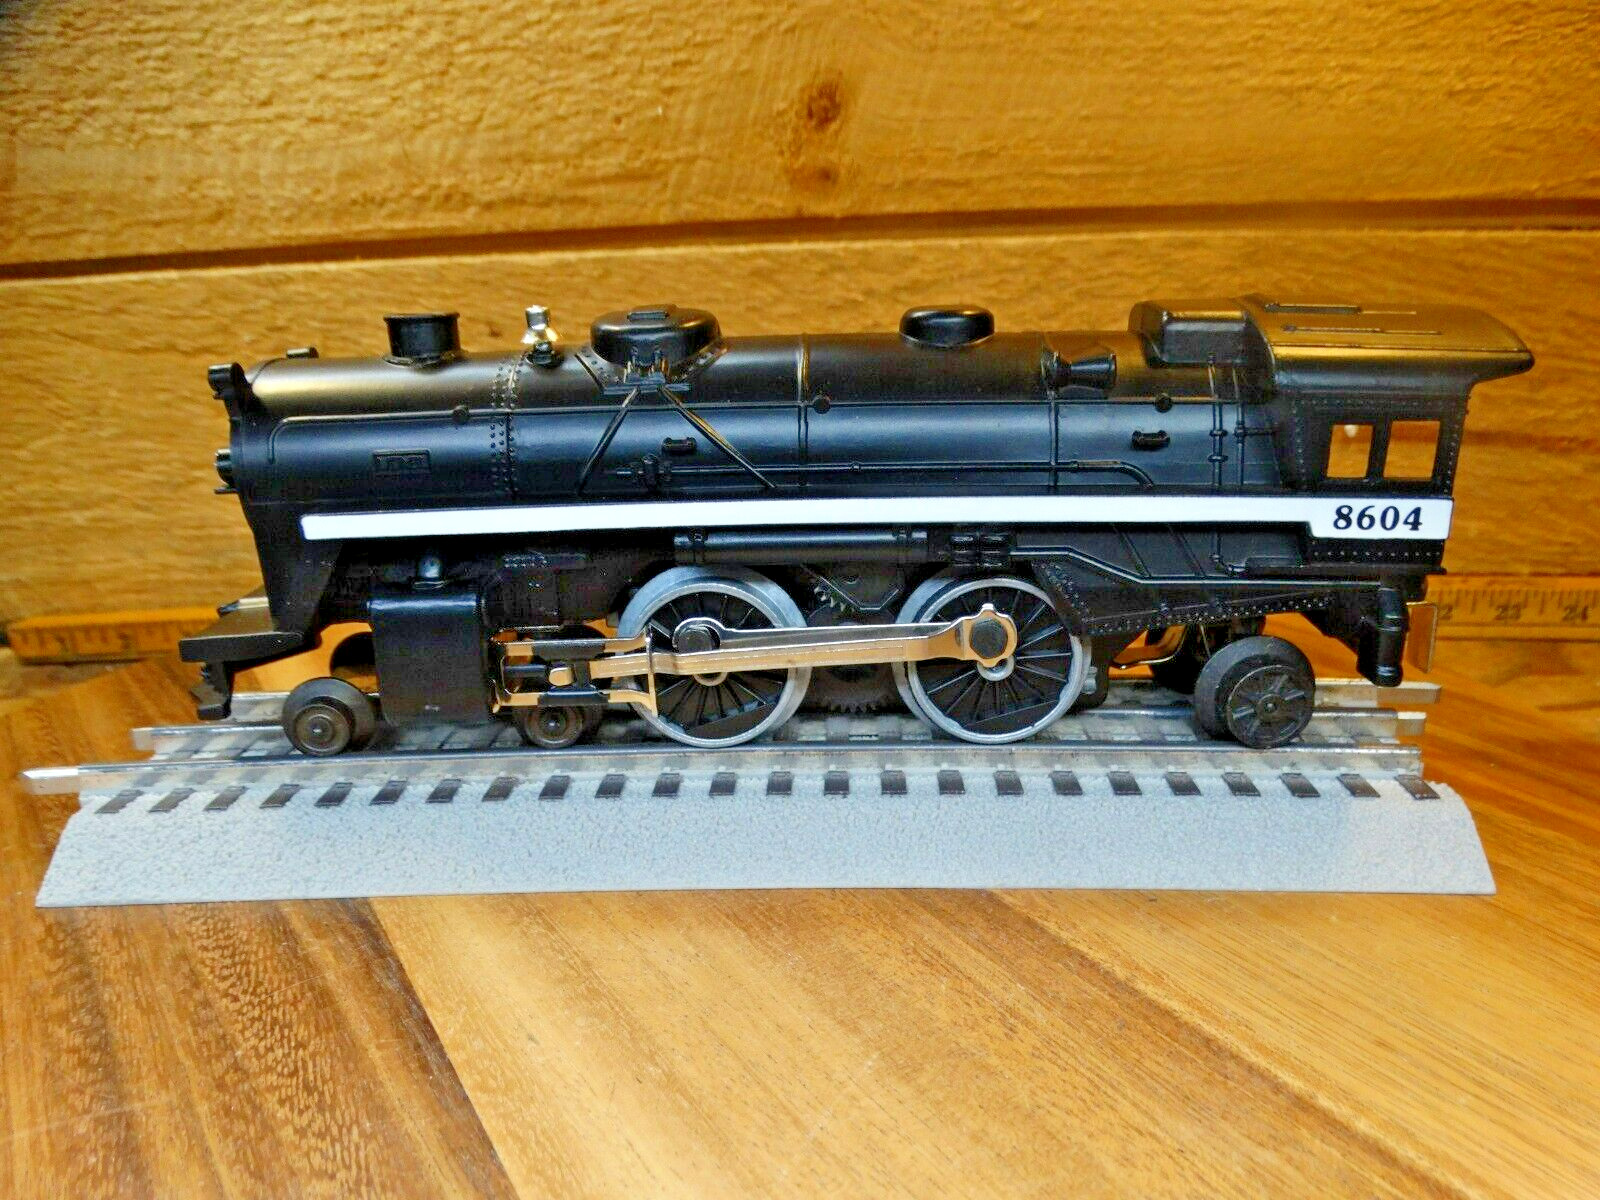 Lionel 0/027 Diecast 4-4-2 Black Steam Locomotive Engine 8604 with Smoke Unit